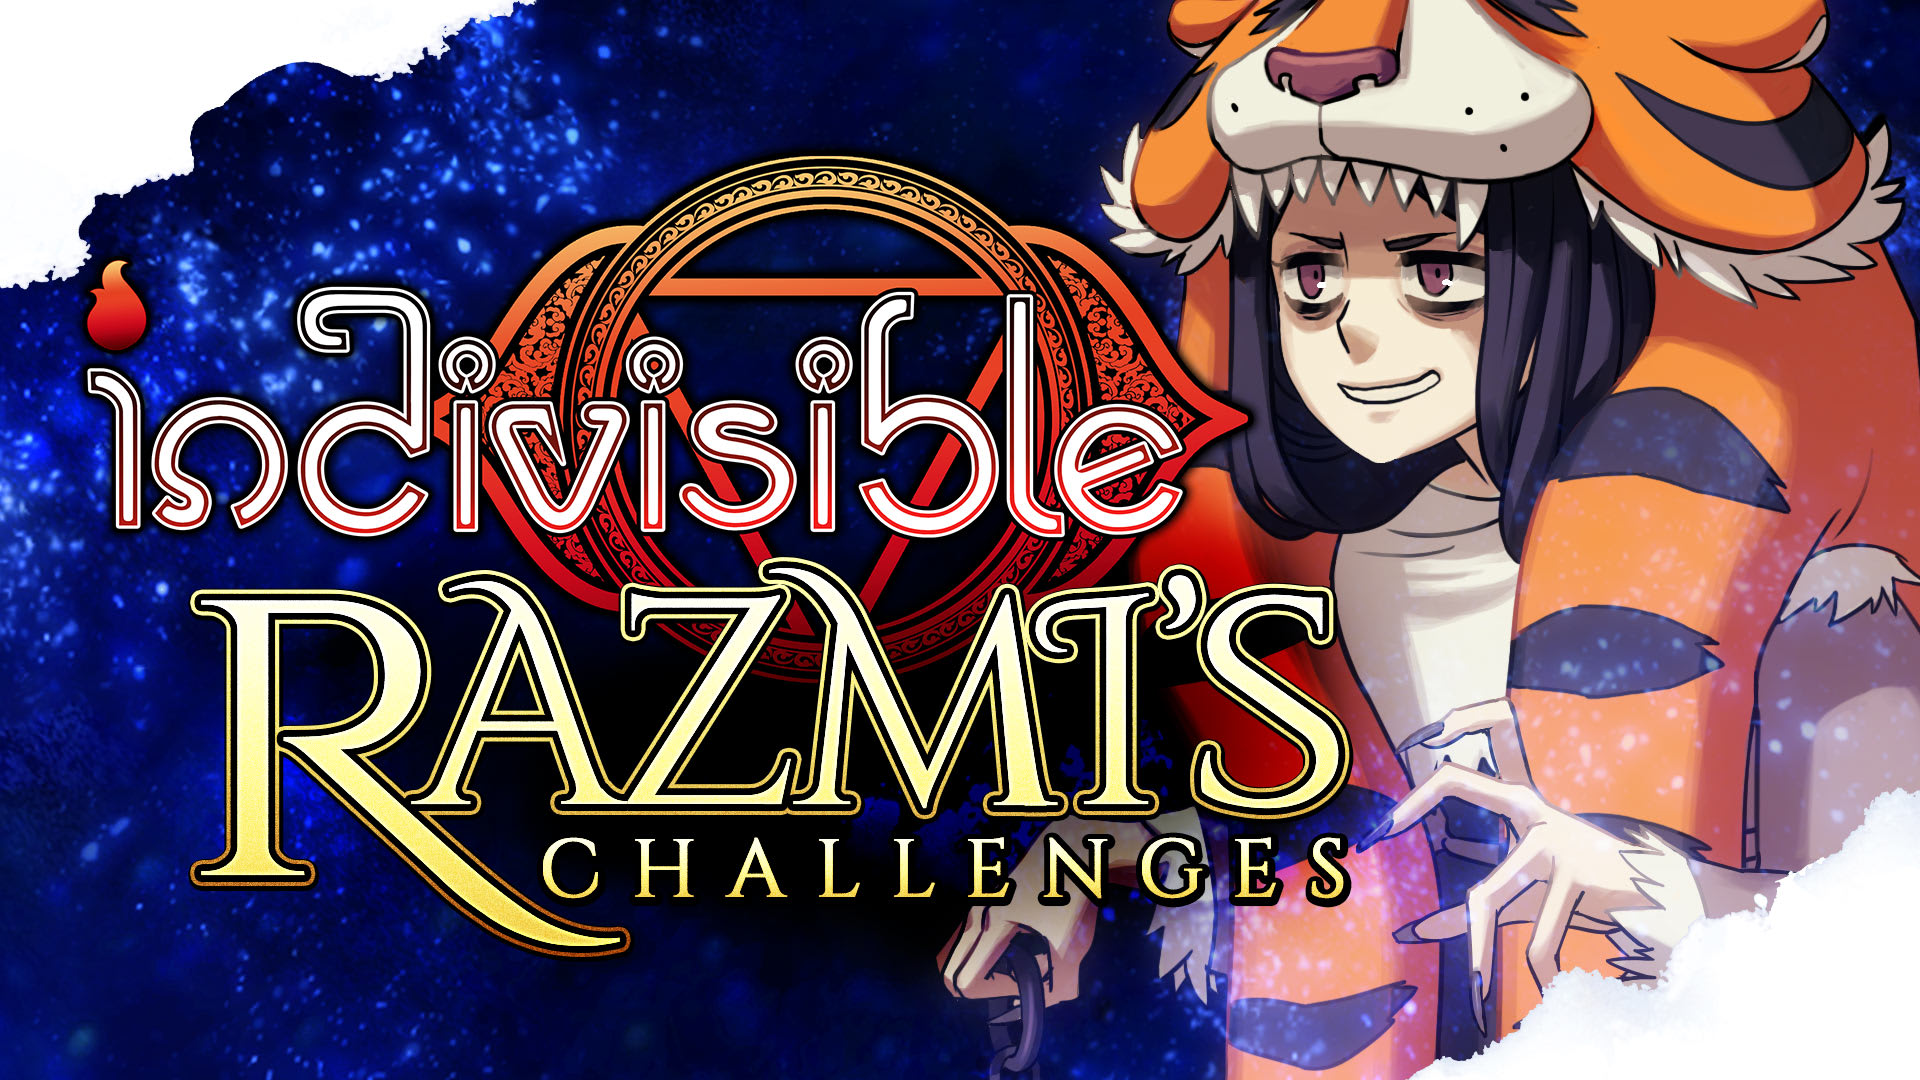 Razmi's Challenges